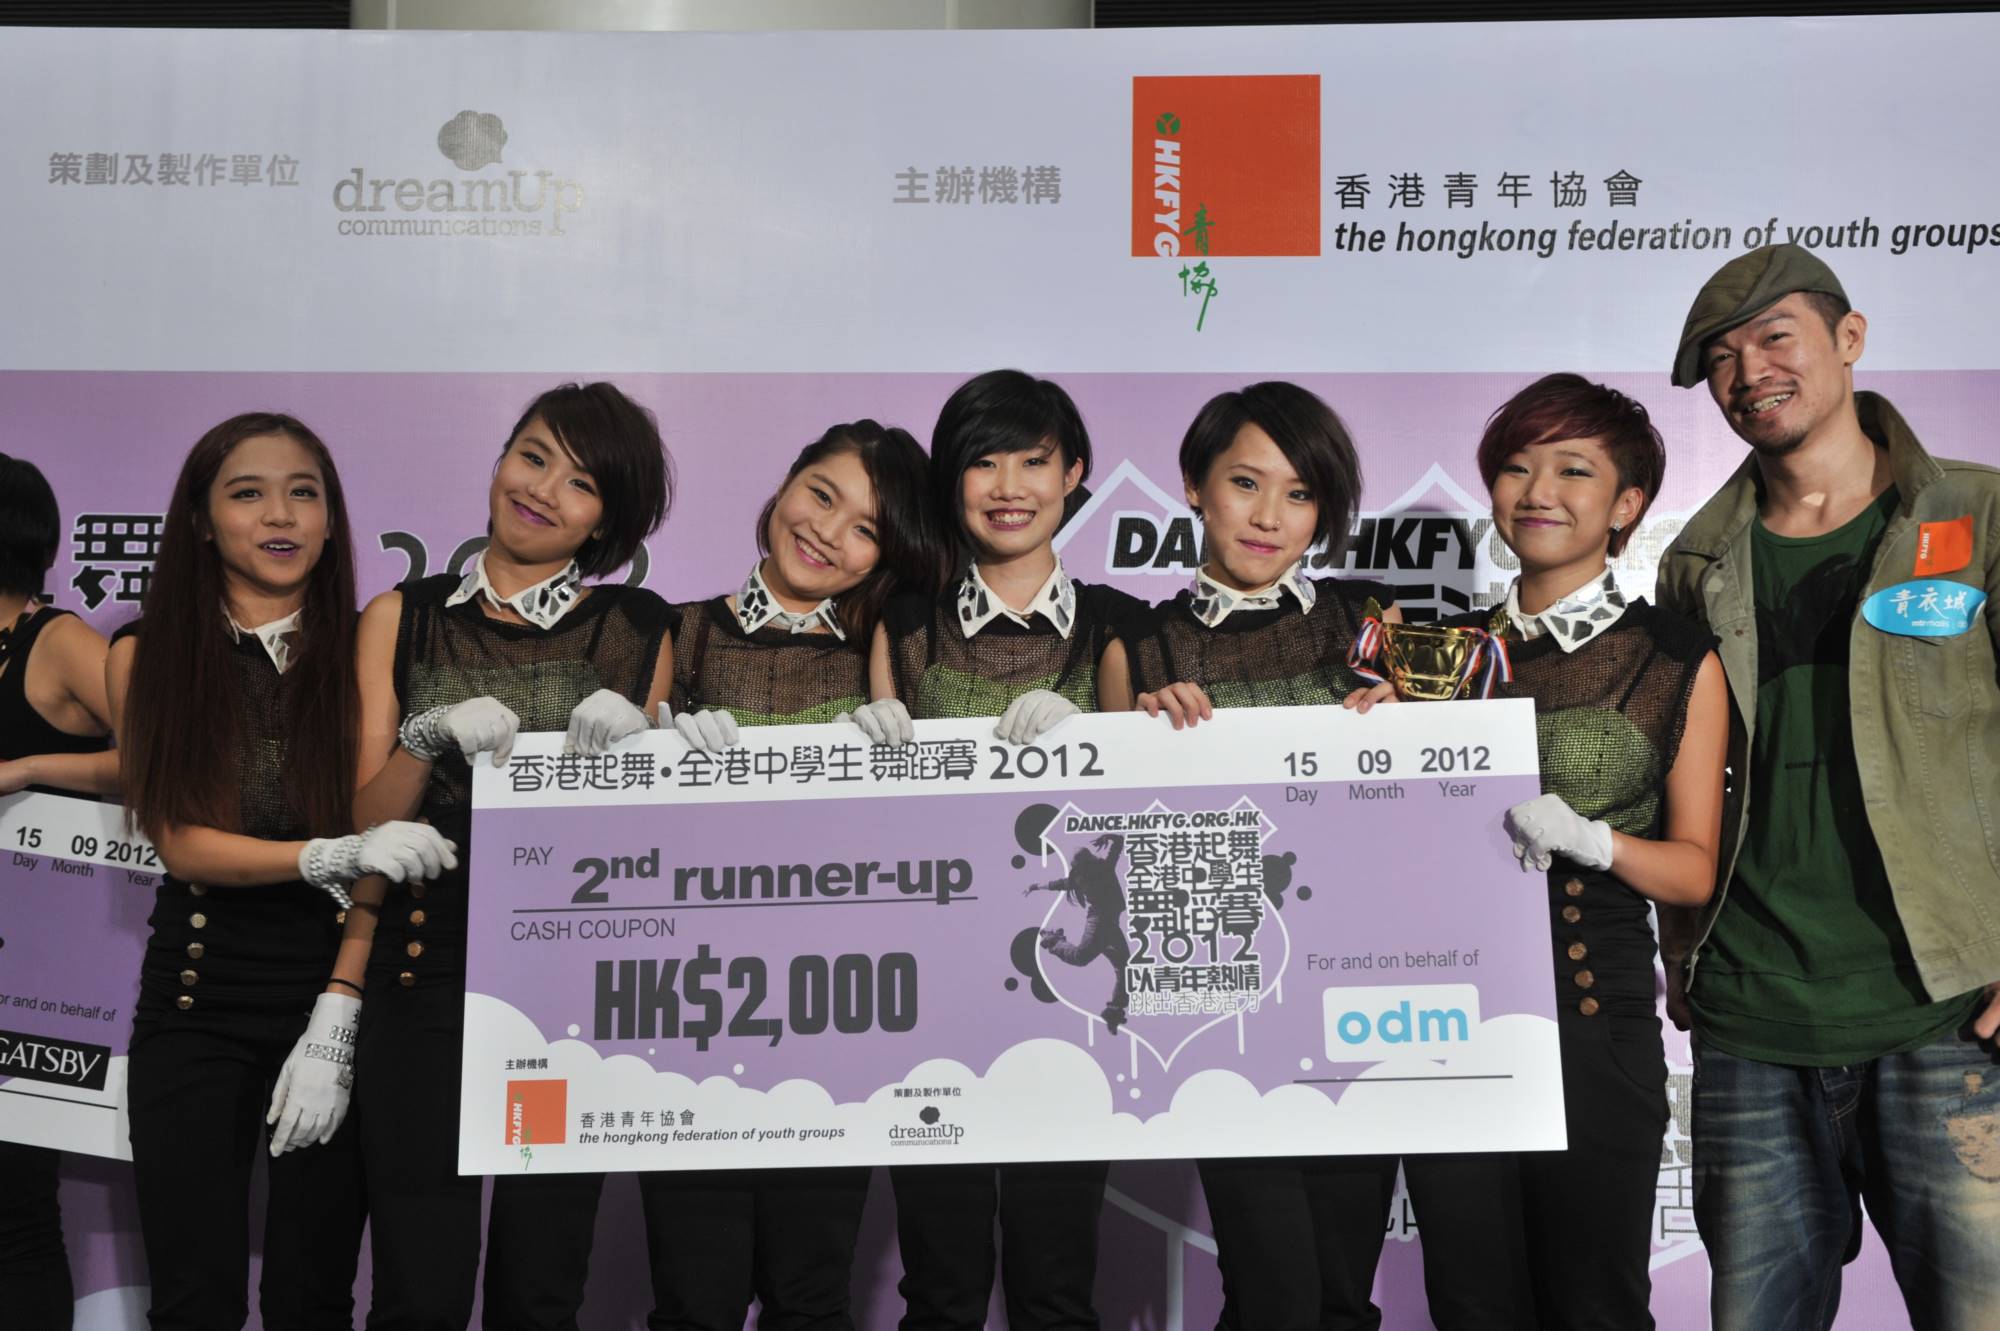 全港中學生舞蹈賽2012得獎隊伍 (2)